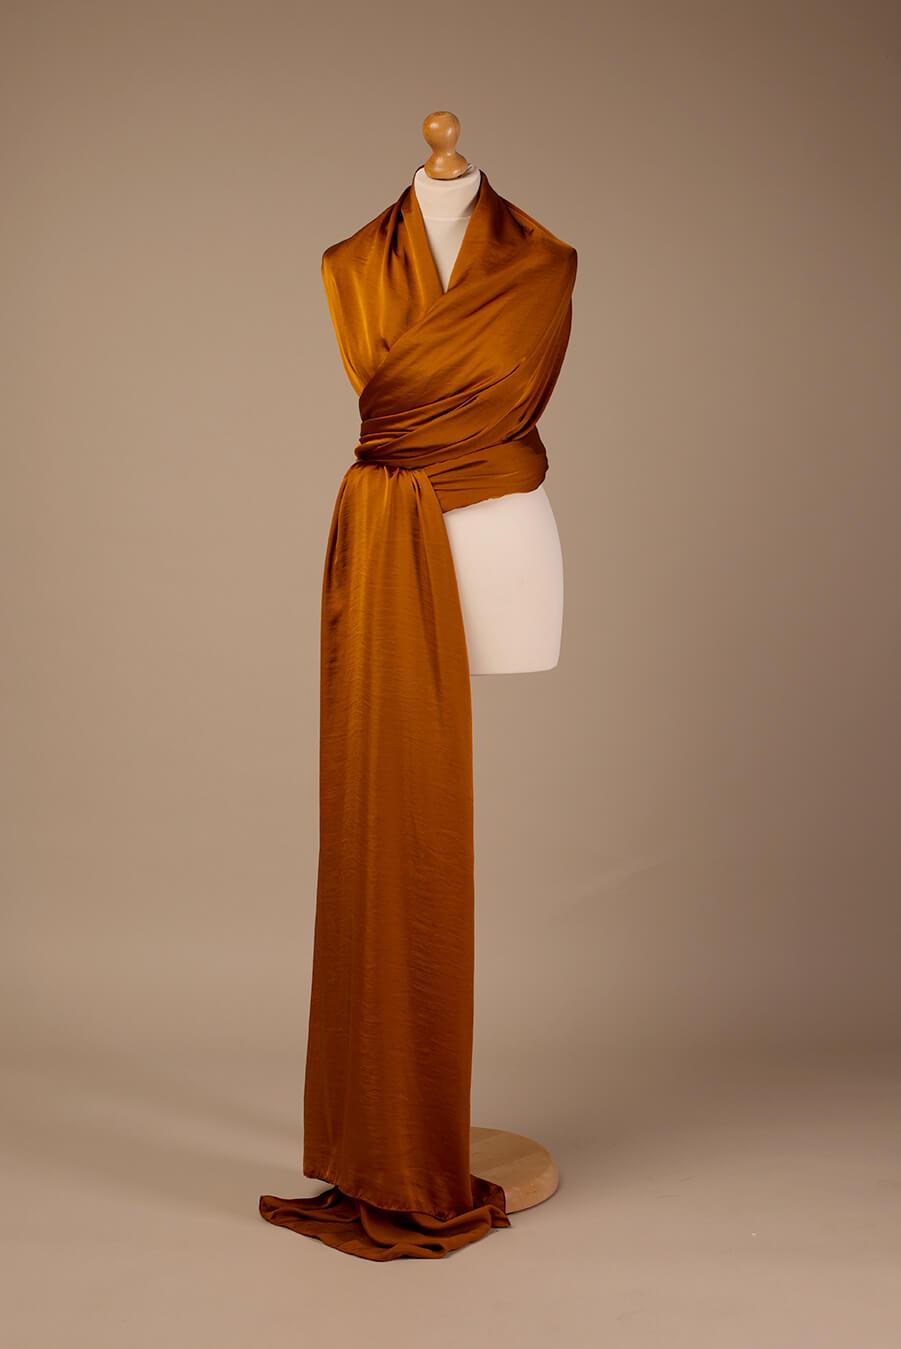 display studio photo of a 5 meter long silky cognac scarf.